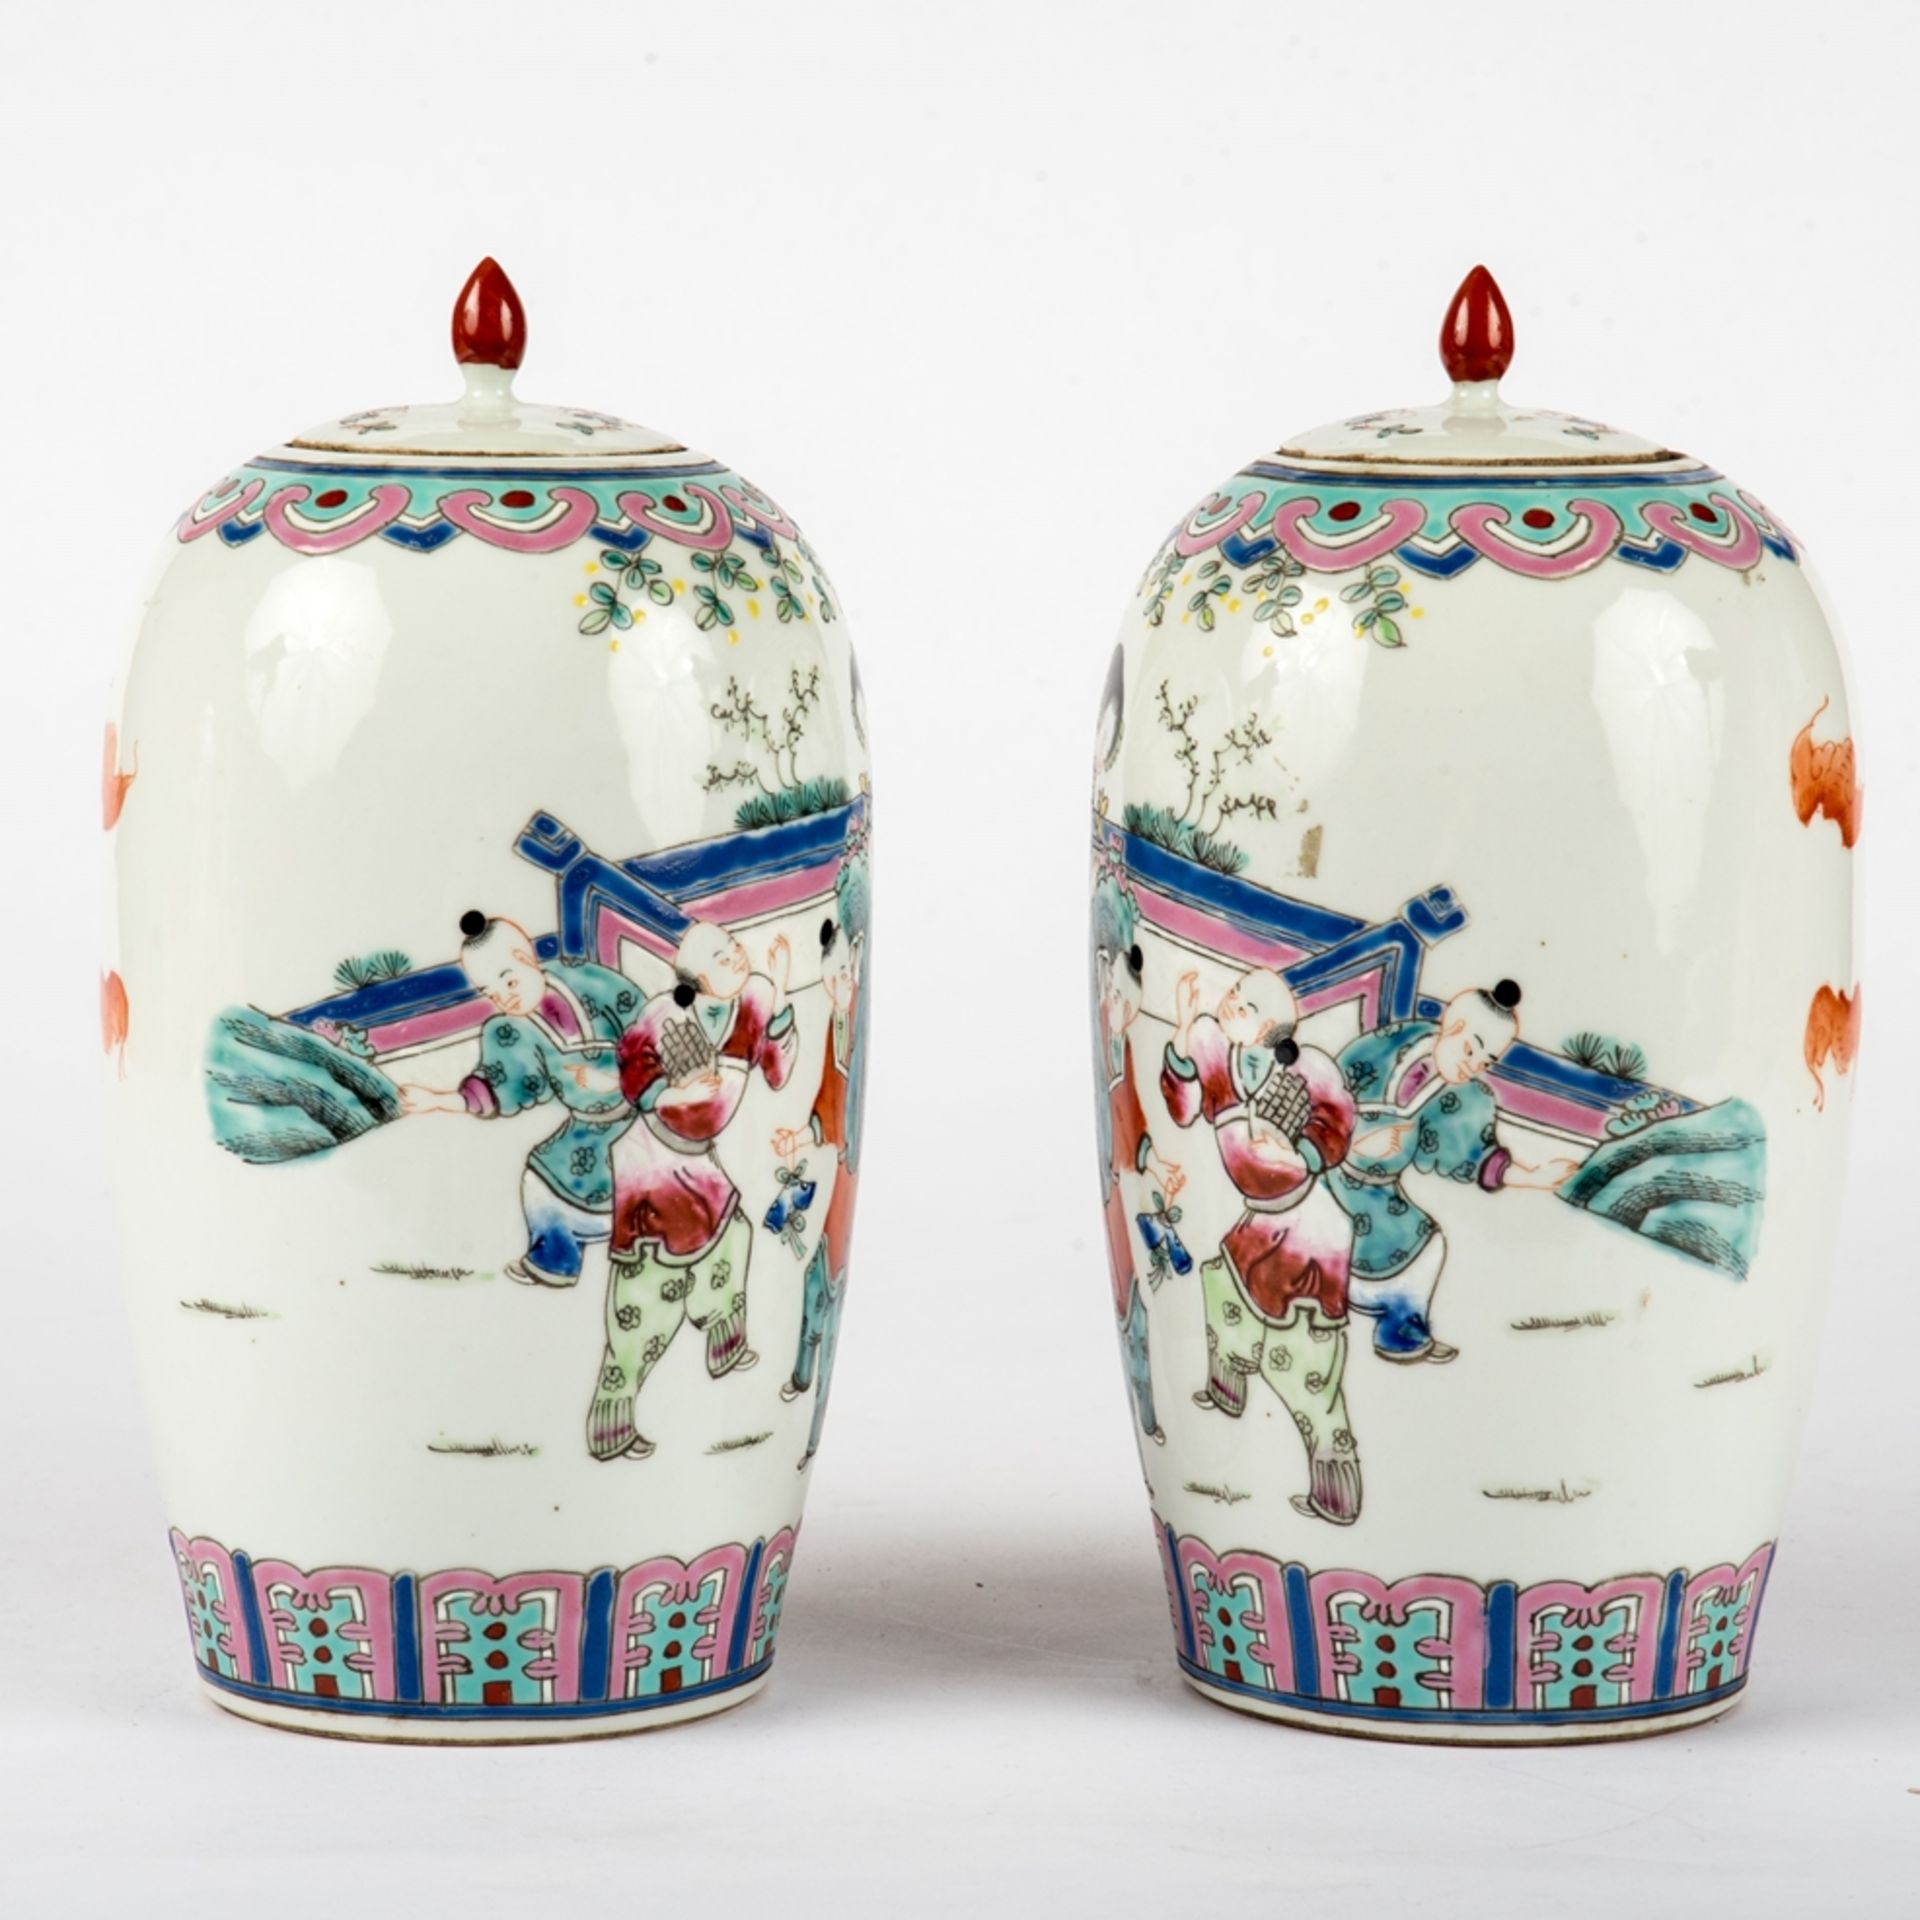 Paar Deckelvasen, China um 1900 - Image 3 of 5